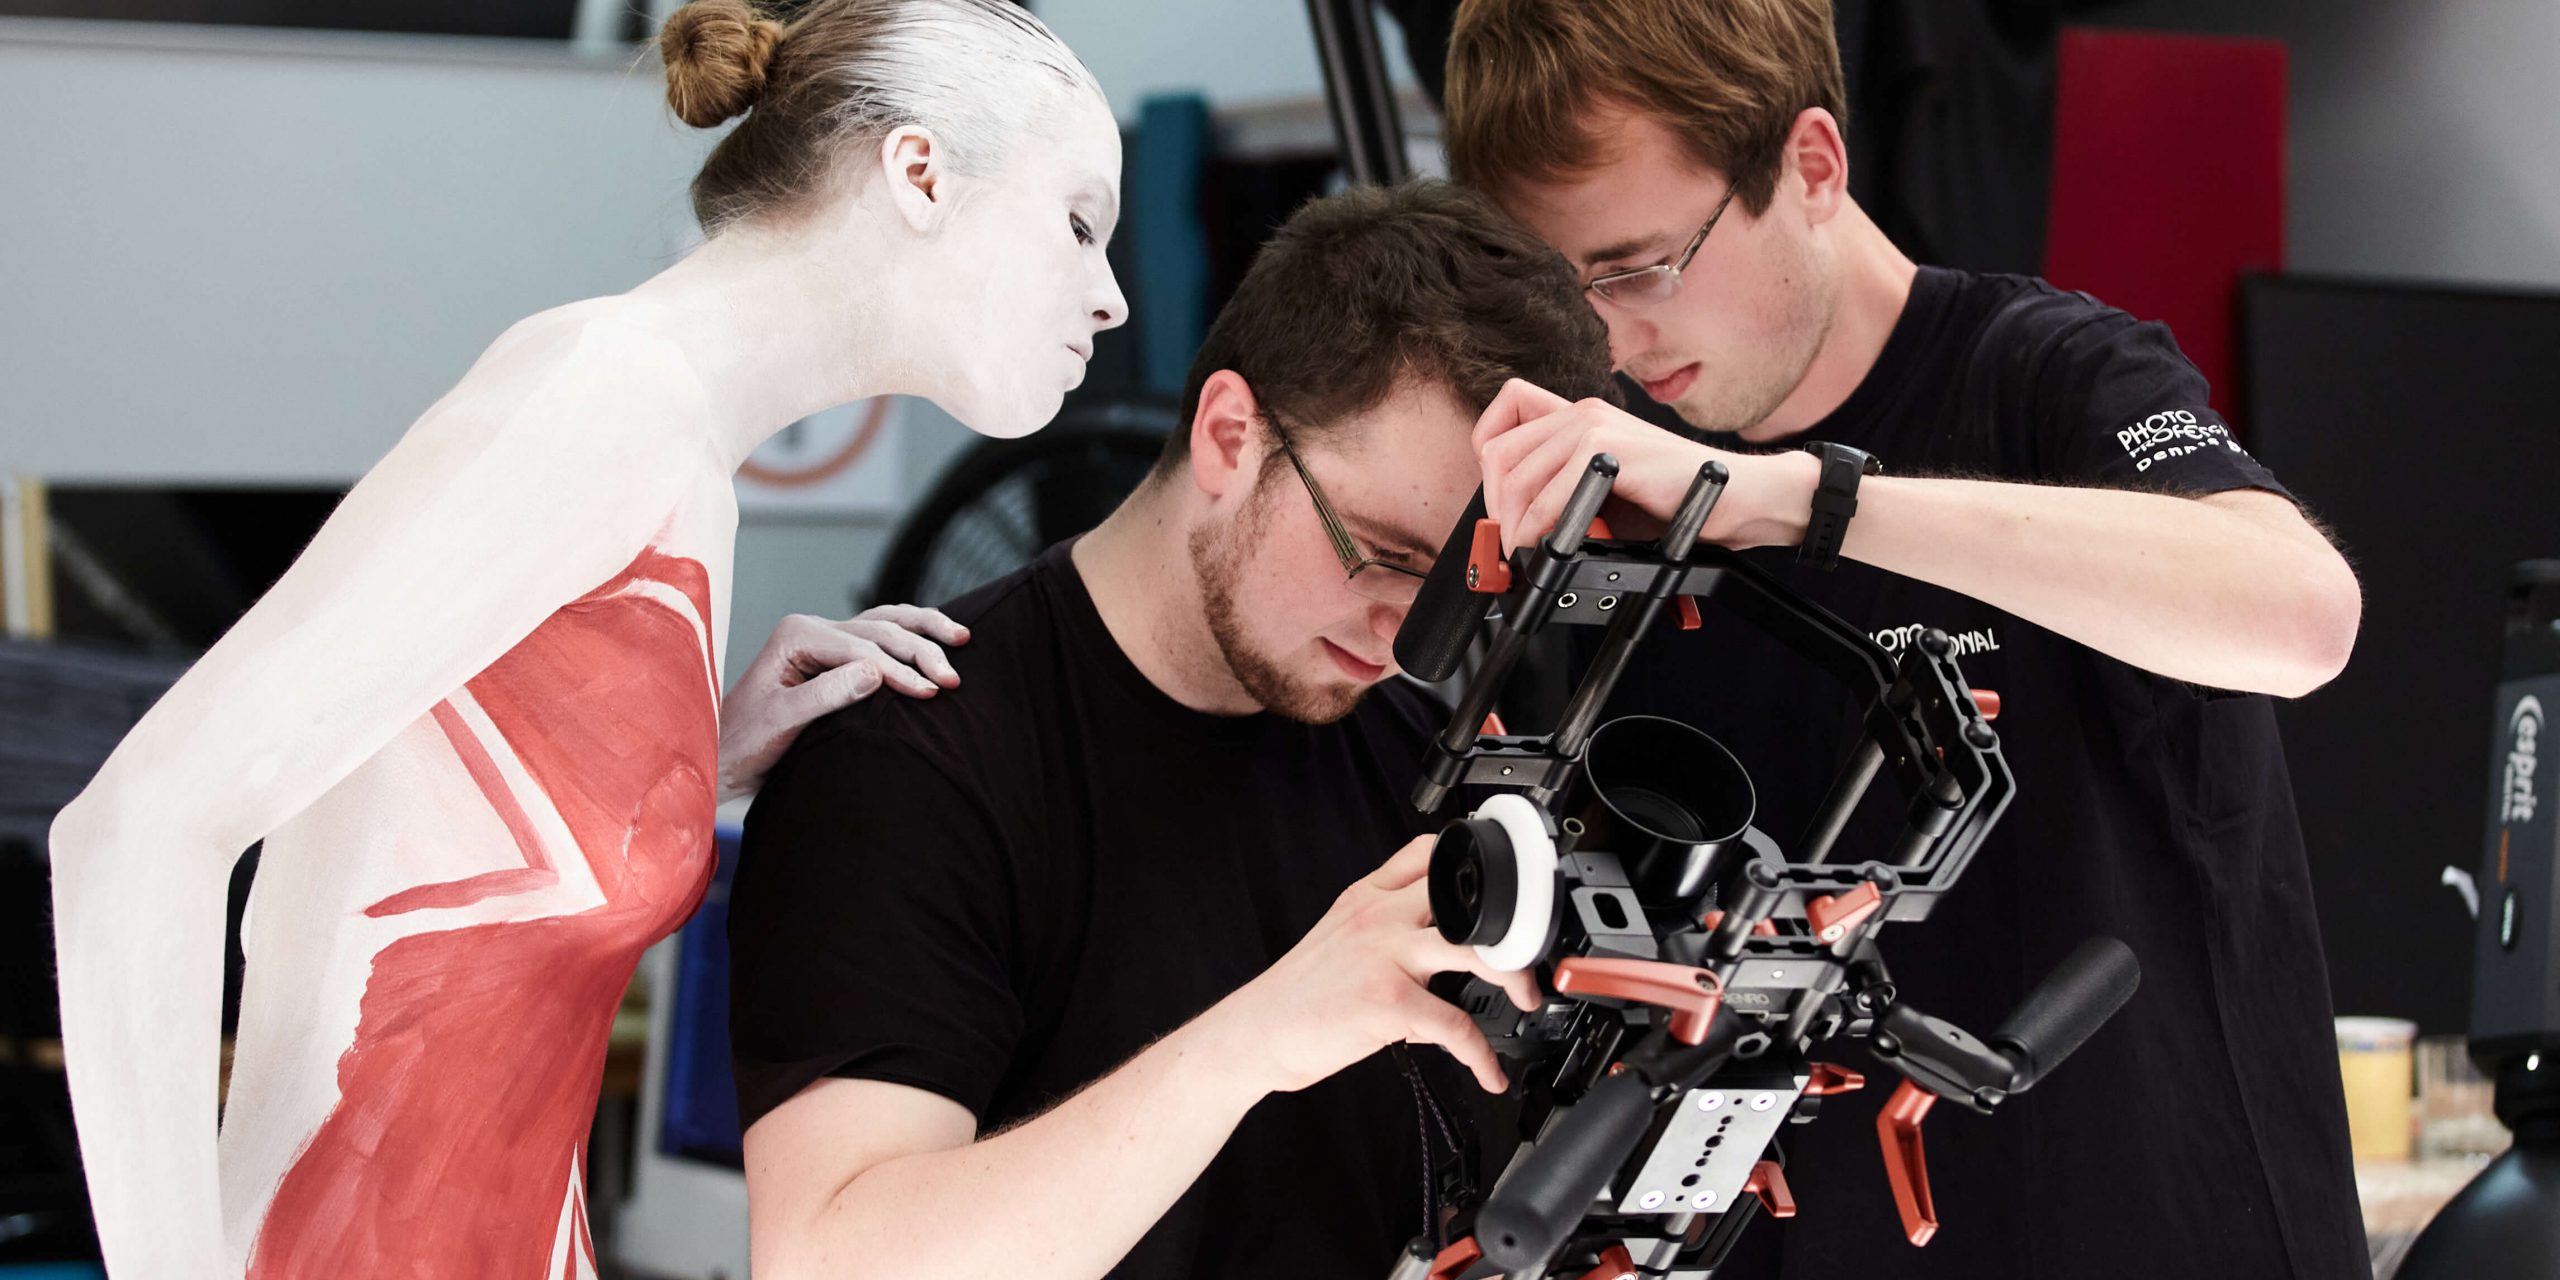 Darsteller und Techniker untersuchen die Videokamera bei einer Produktion